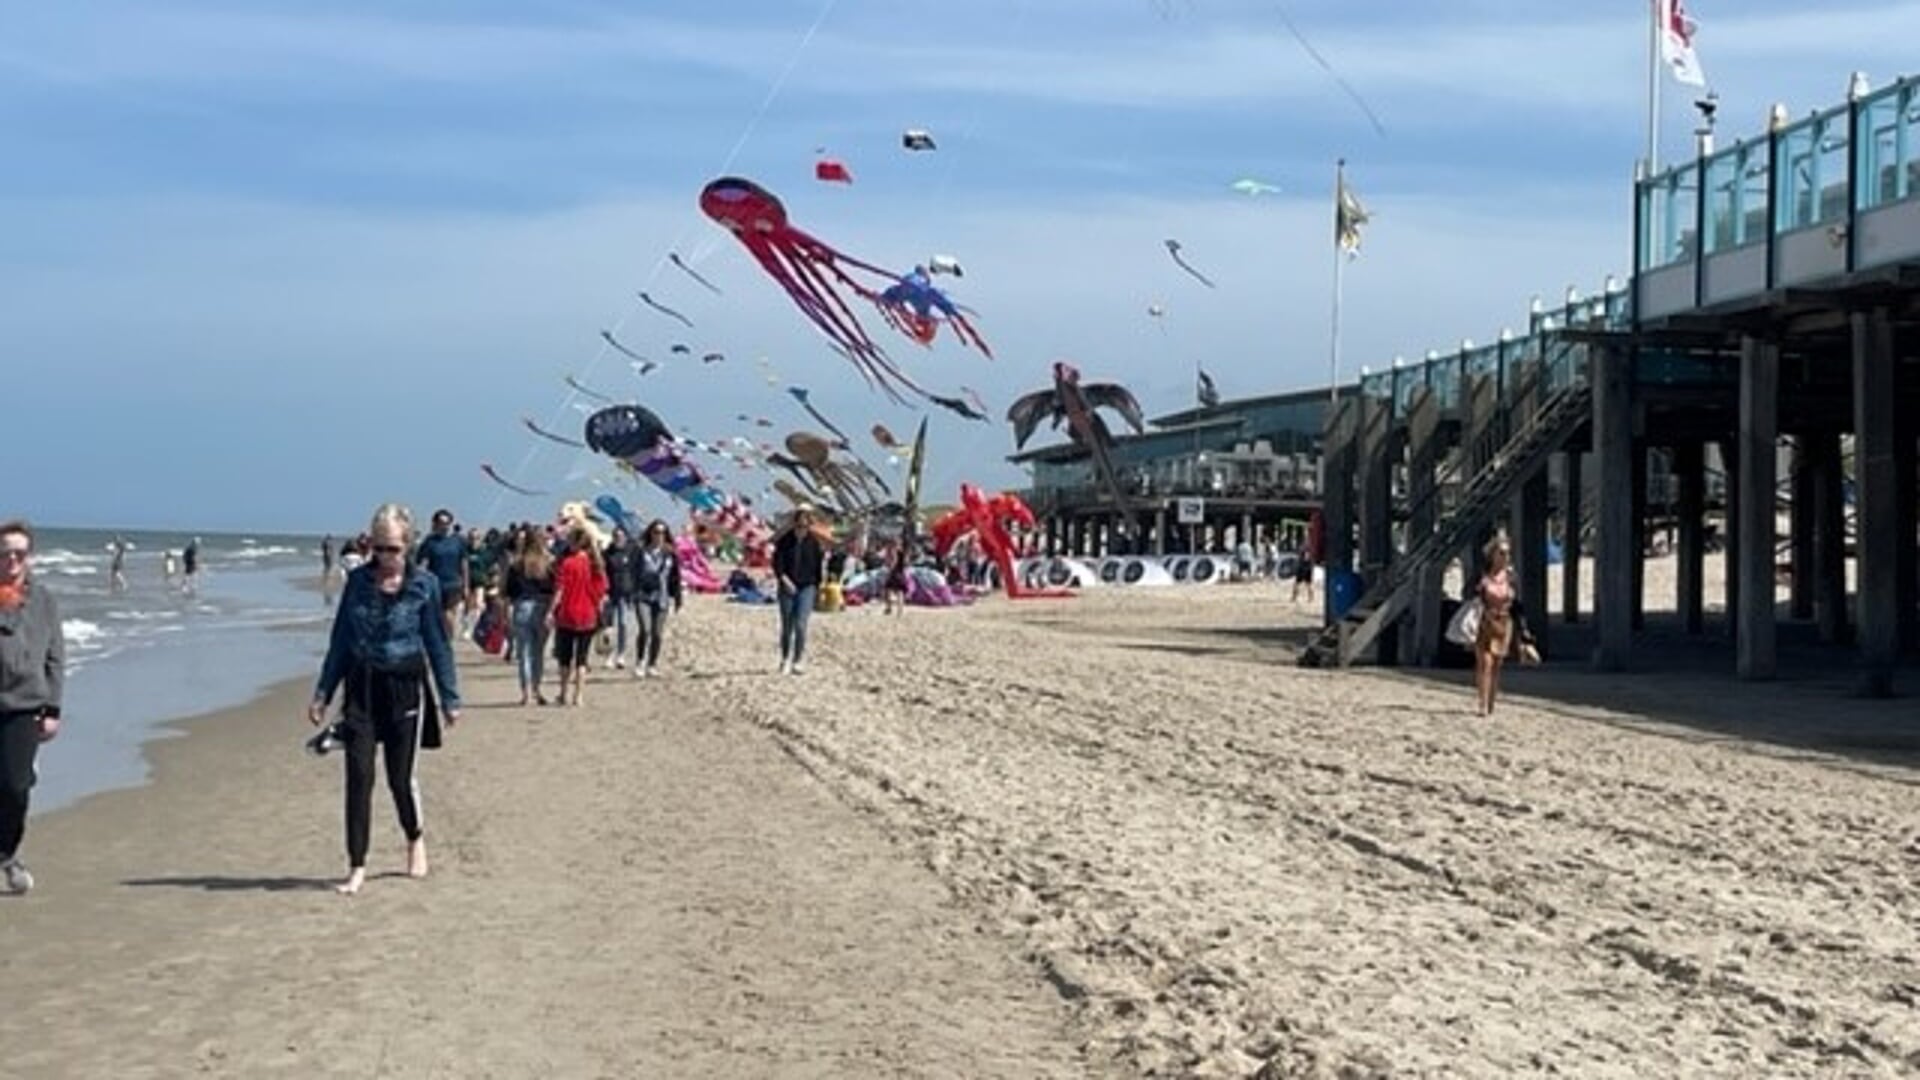 Vliegerspektakel op het strand van Callantsoog.